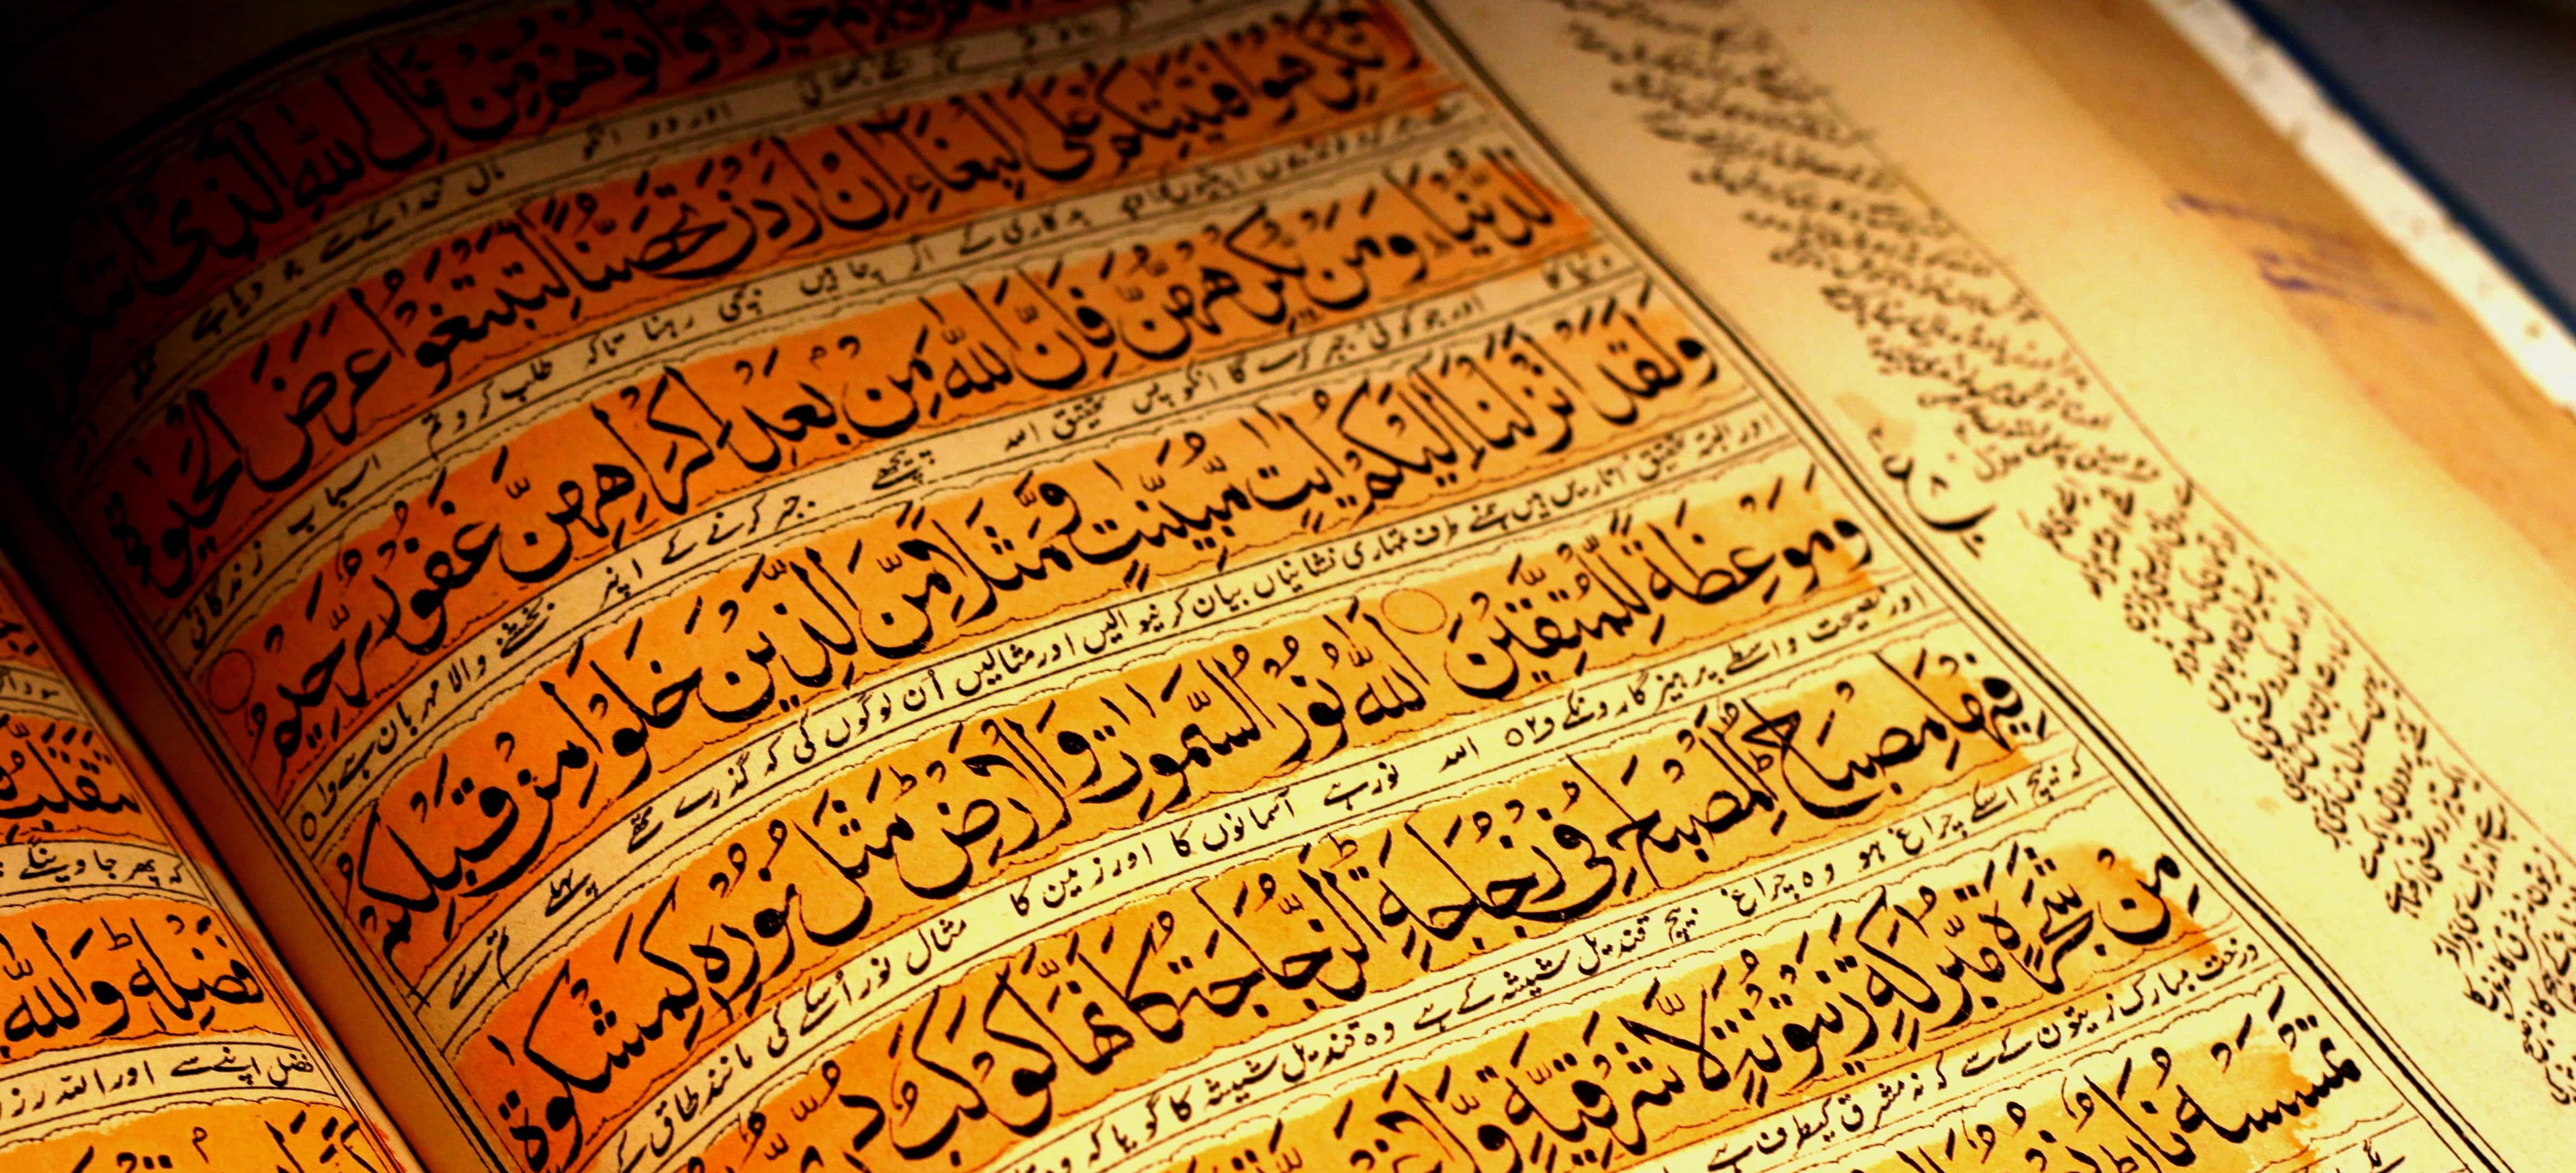 دعوة للاستكتاب "الحكاية والفضيلة: سؤال الأخلاق في القصص القرآني والكتابي"